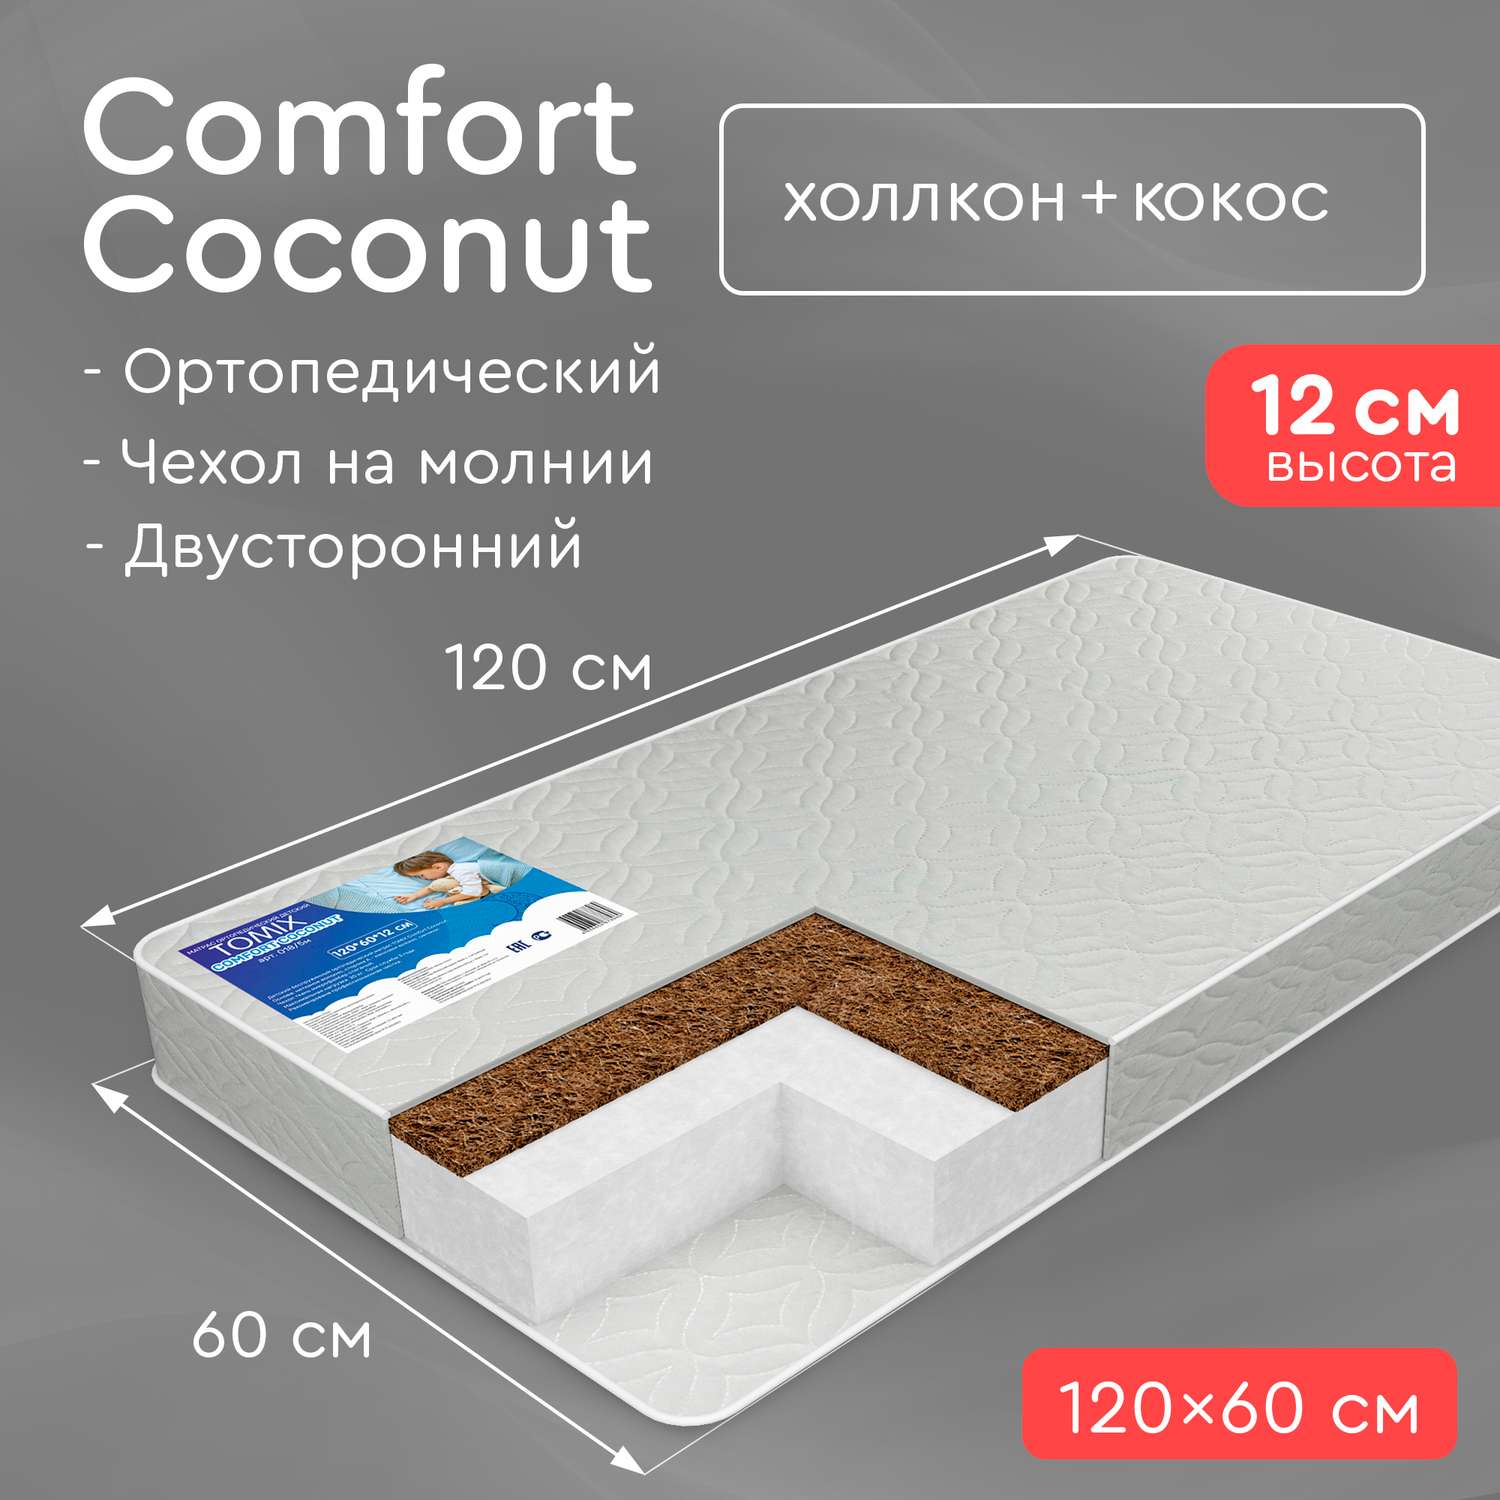 Матрас в кроватку Tomix Comfort Coconut 120*60см - фото 2